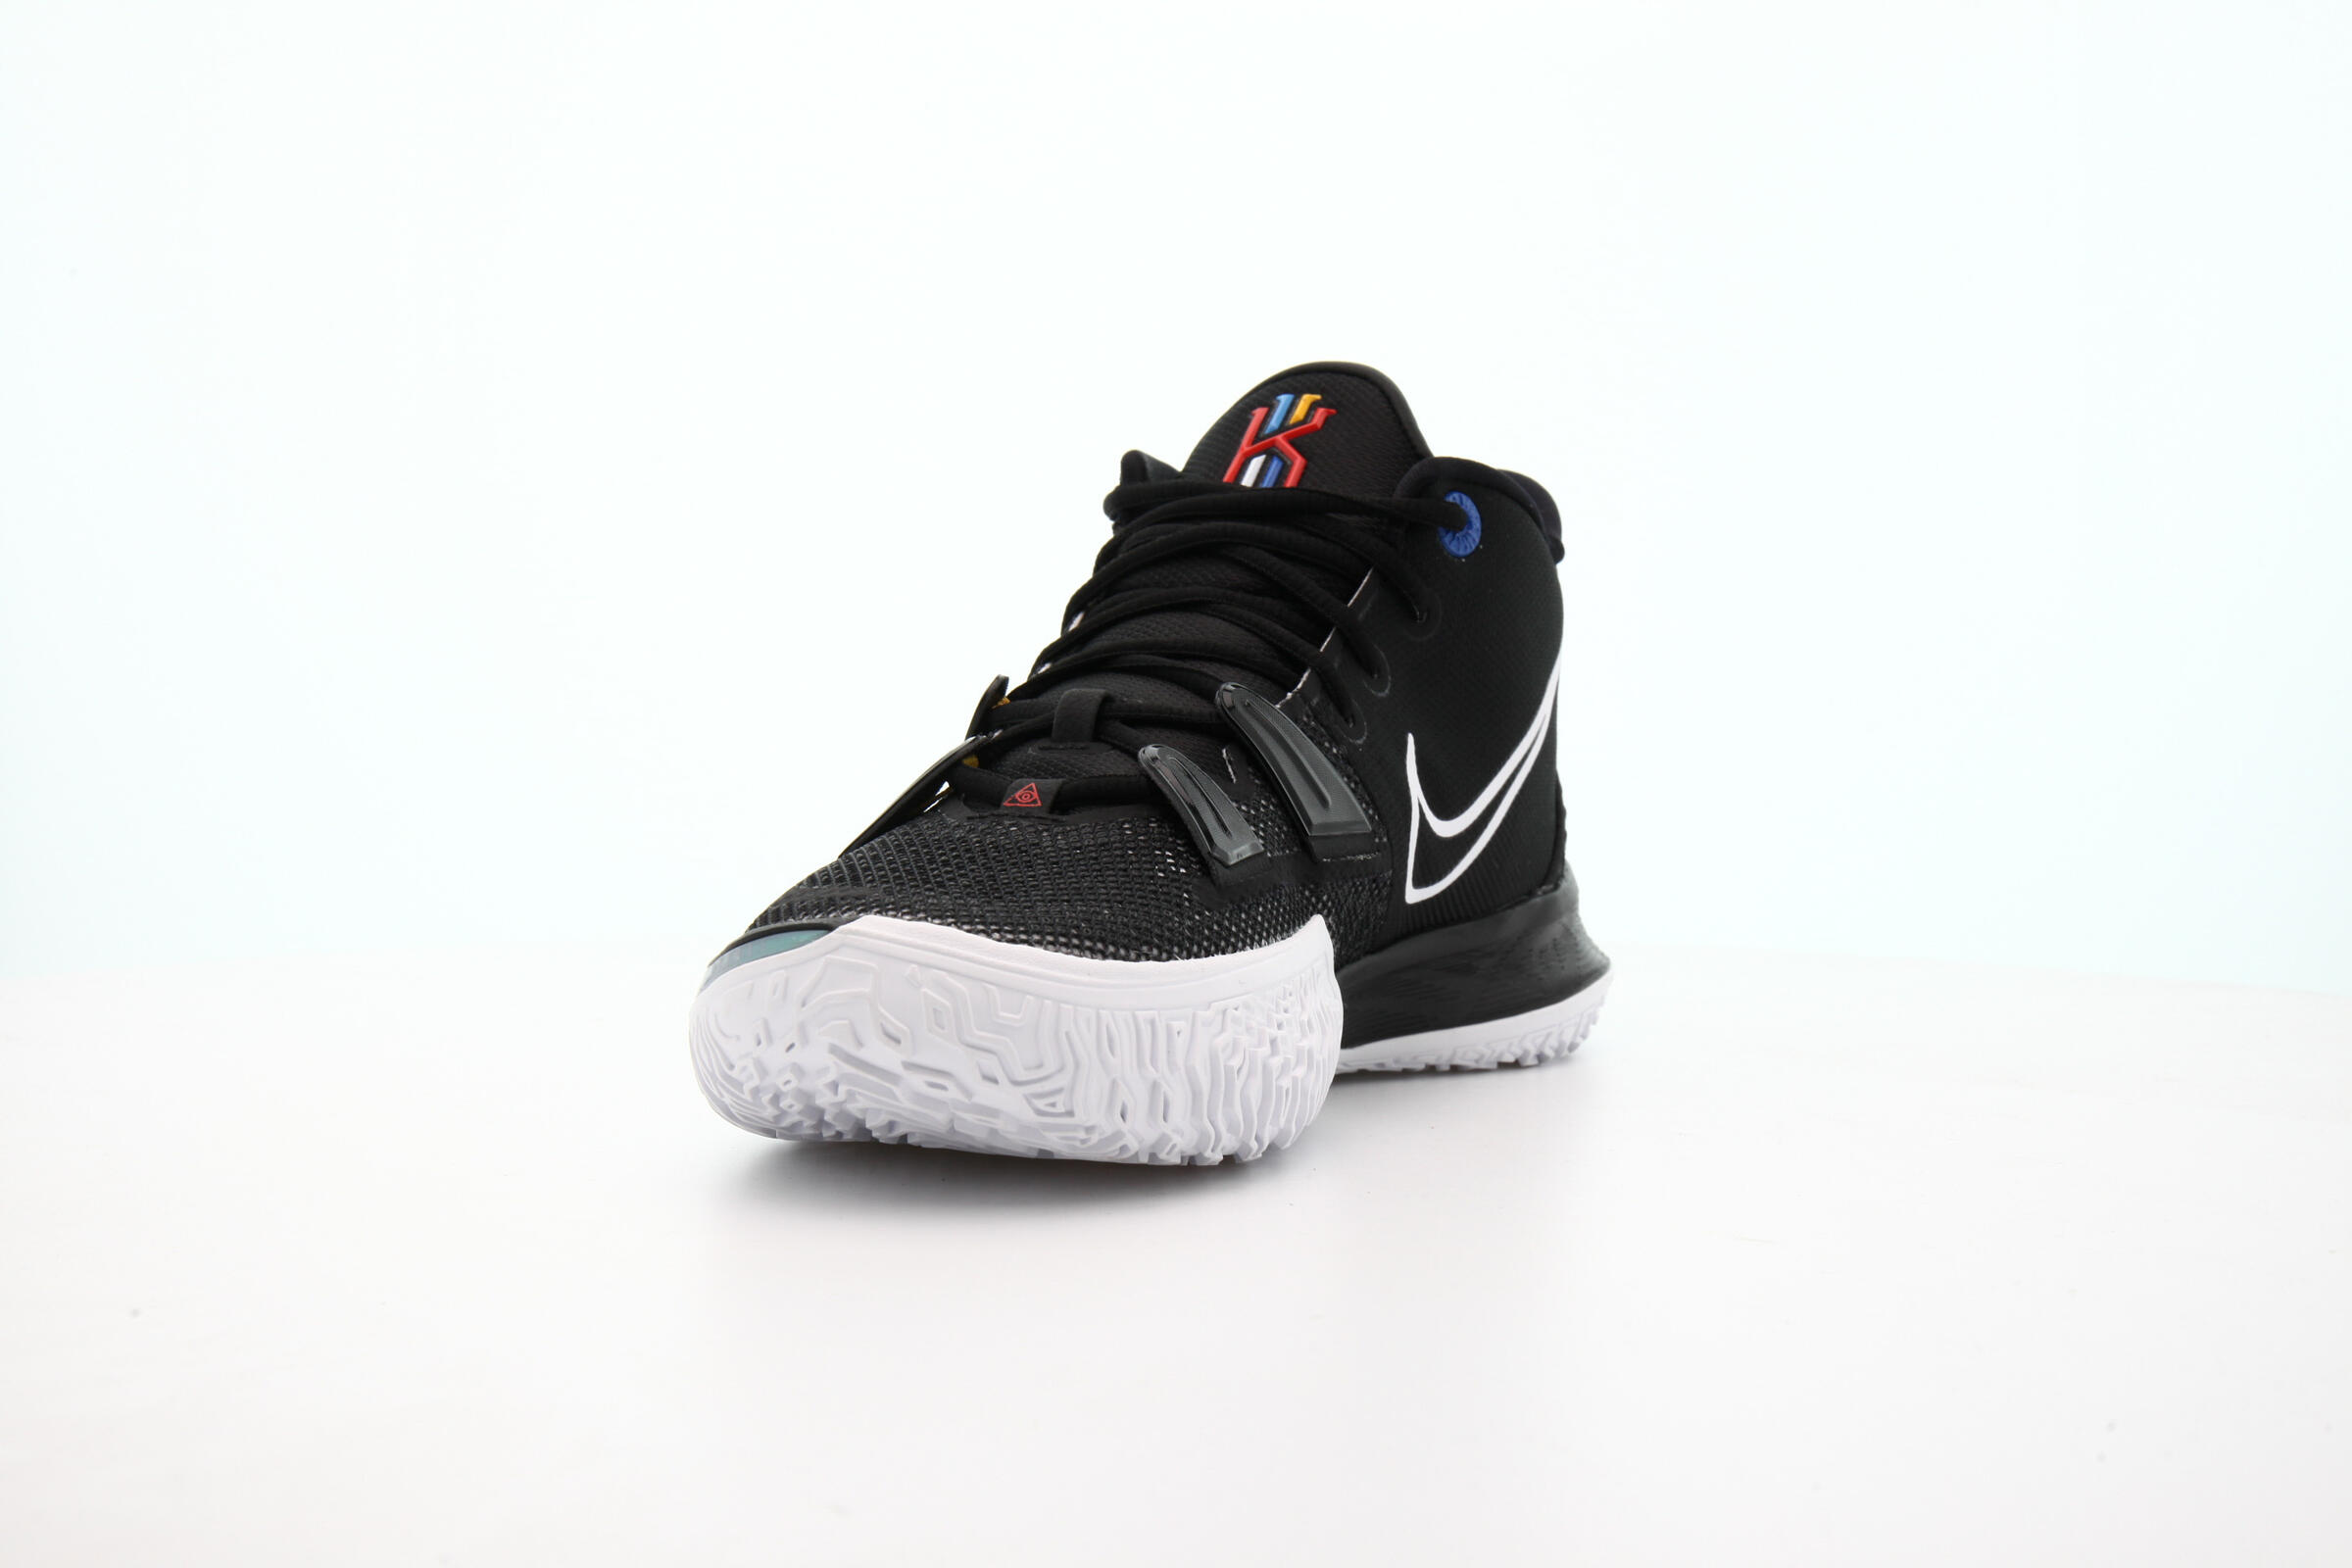 Nike KYRIE 7 "BLACK"